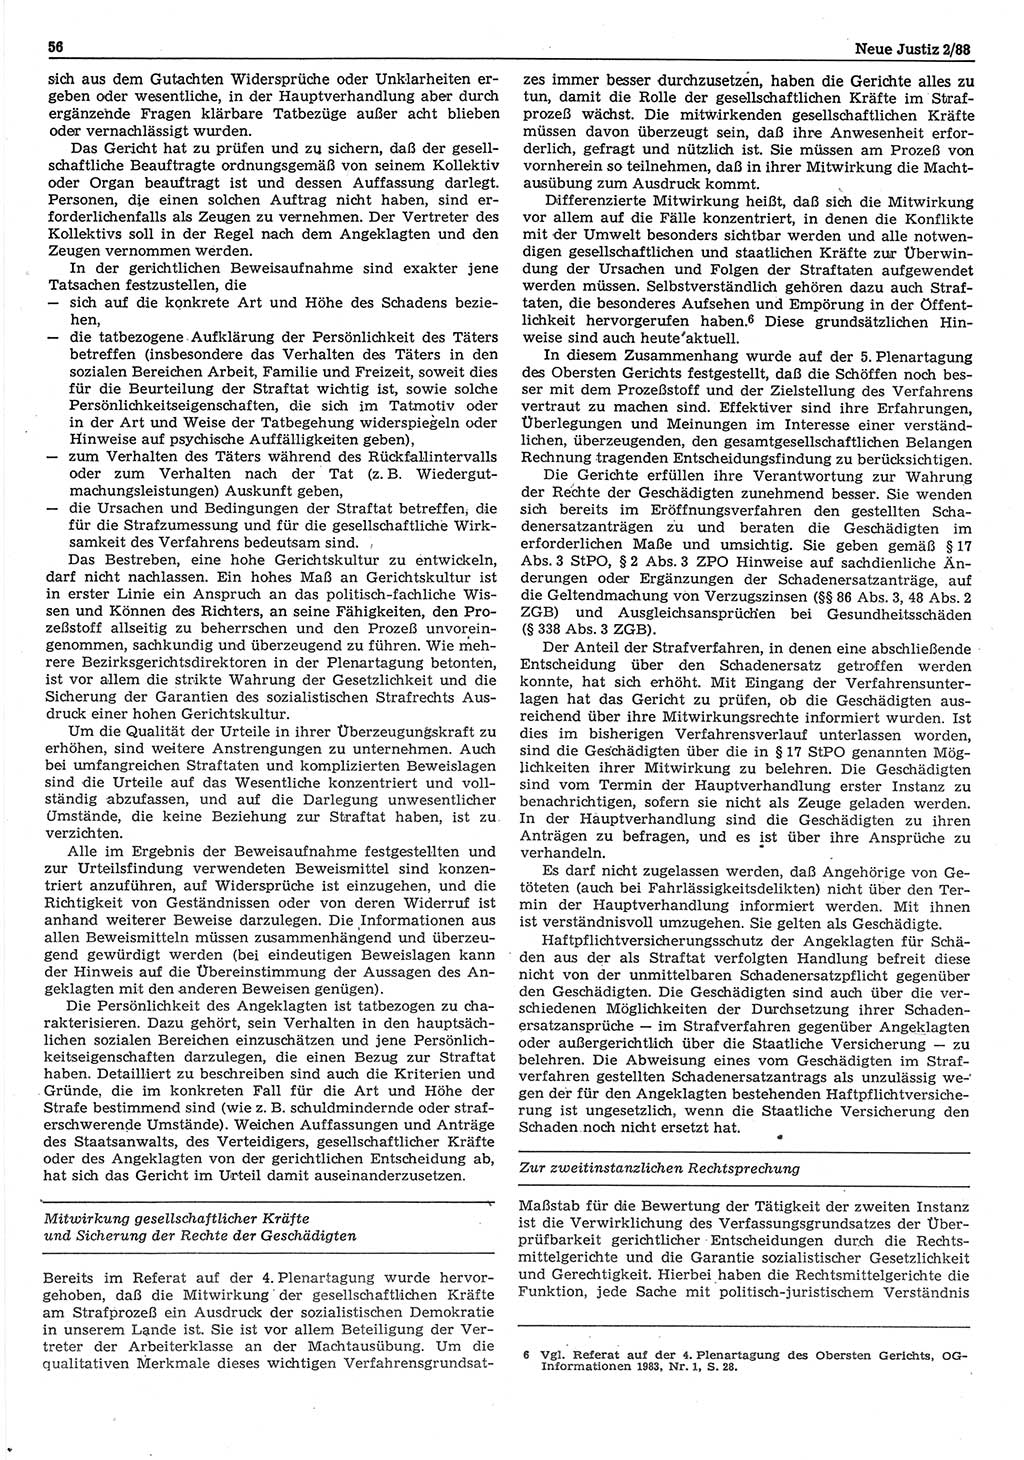 Neue Justiz (NJ), Zeitschrift für sozialistisches Recht und Gesetzlichkeit [Deutsche Demokratische Republik (DDR)], 42. Jahrgang 1988, Seite 56 (NJ DDR 1988, S. 56)